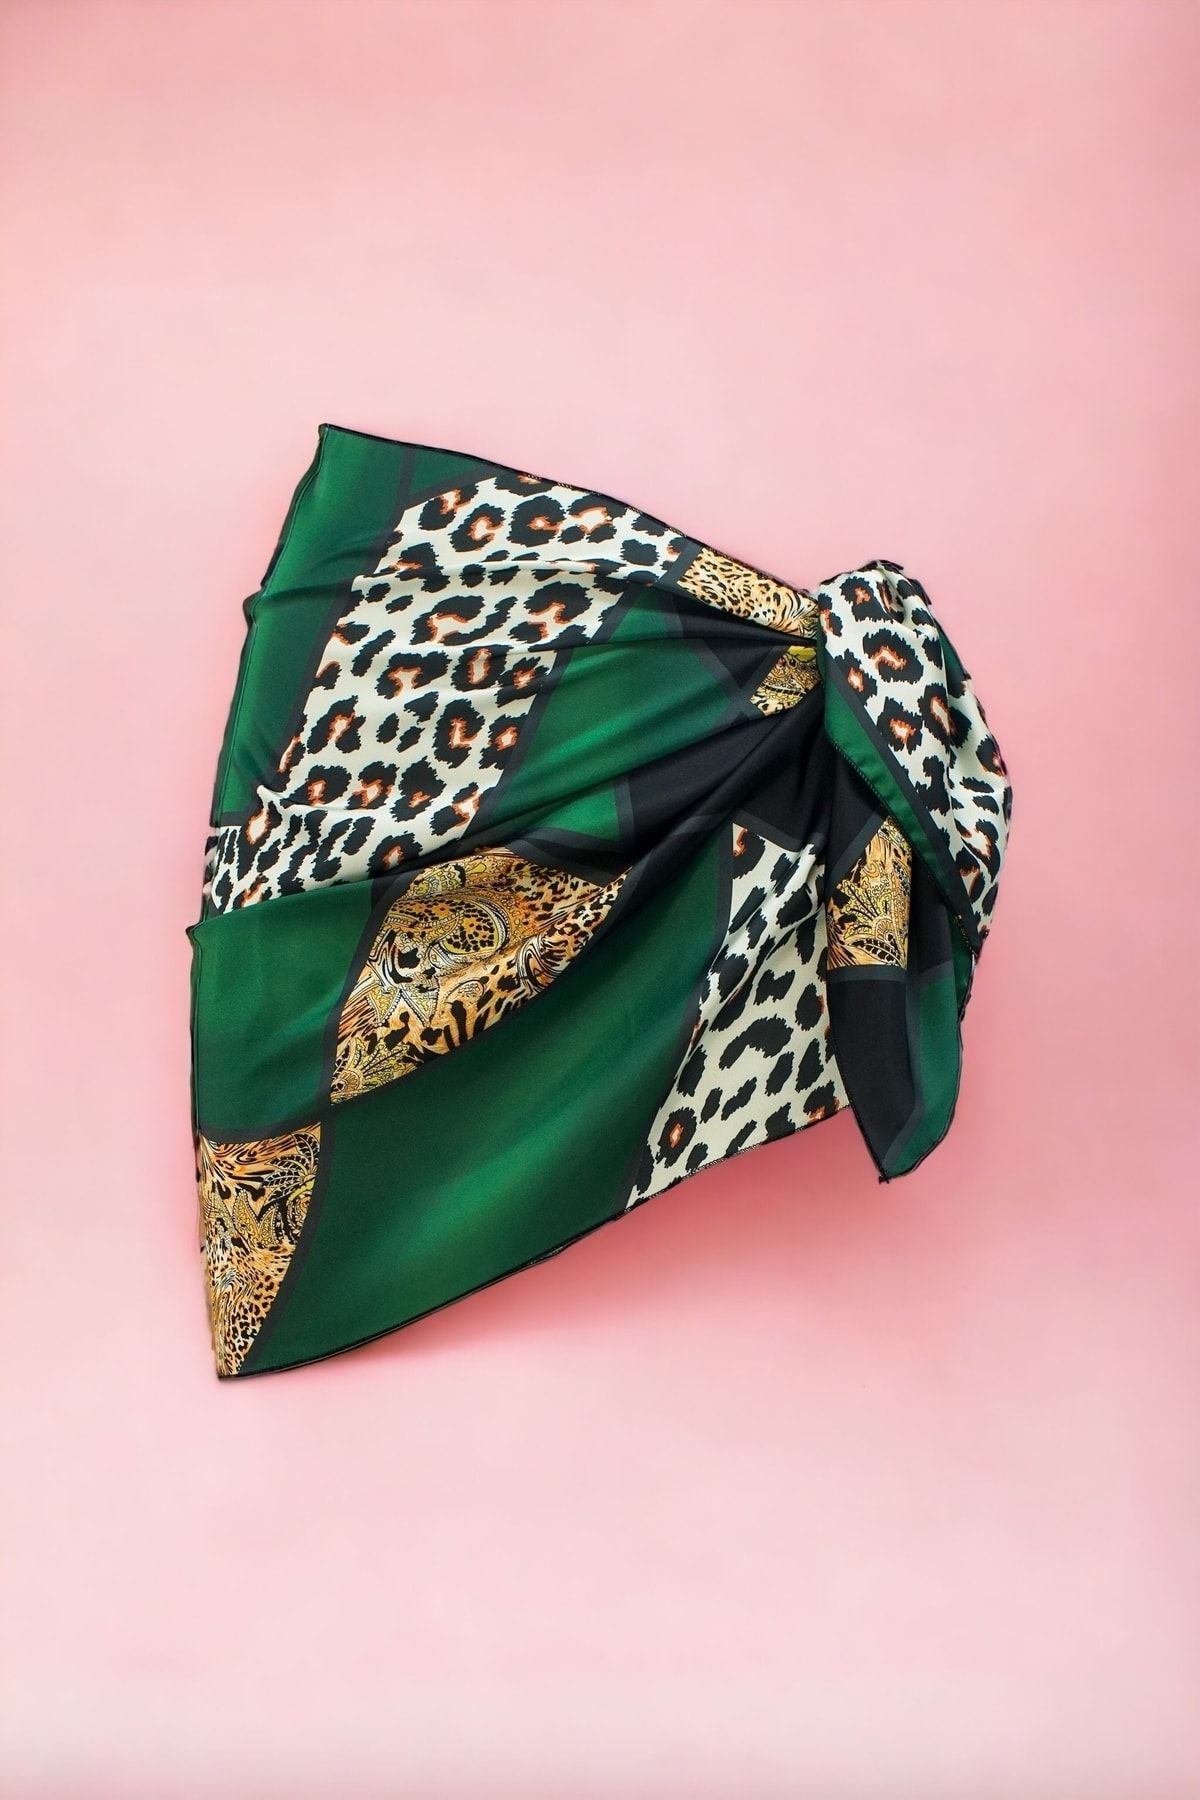 pistore Yeşil Leopar Desenli Kısa Pareo Saten Iç Göstermez Kadın Plaj Elbisesi Yeni Sezon